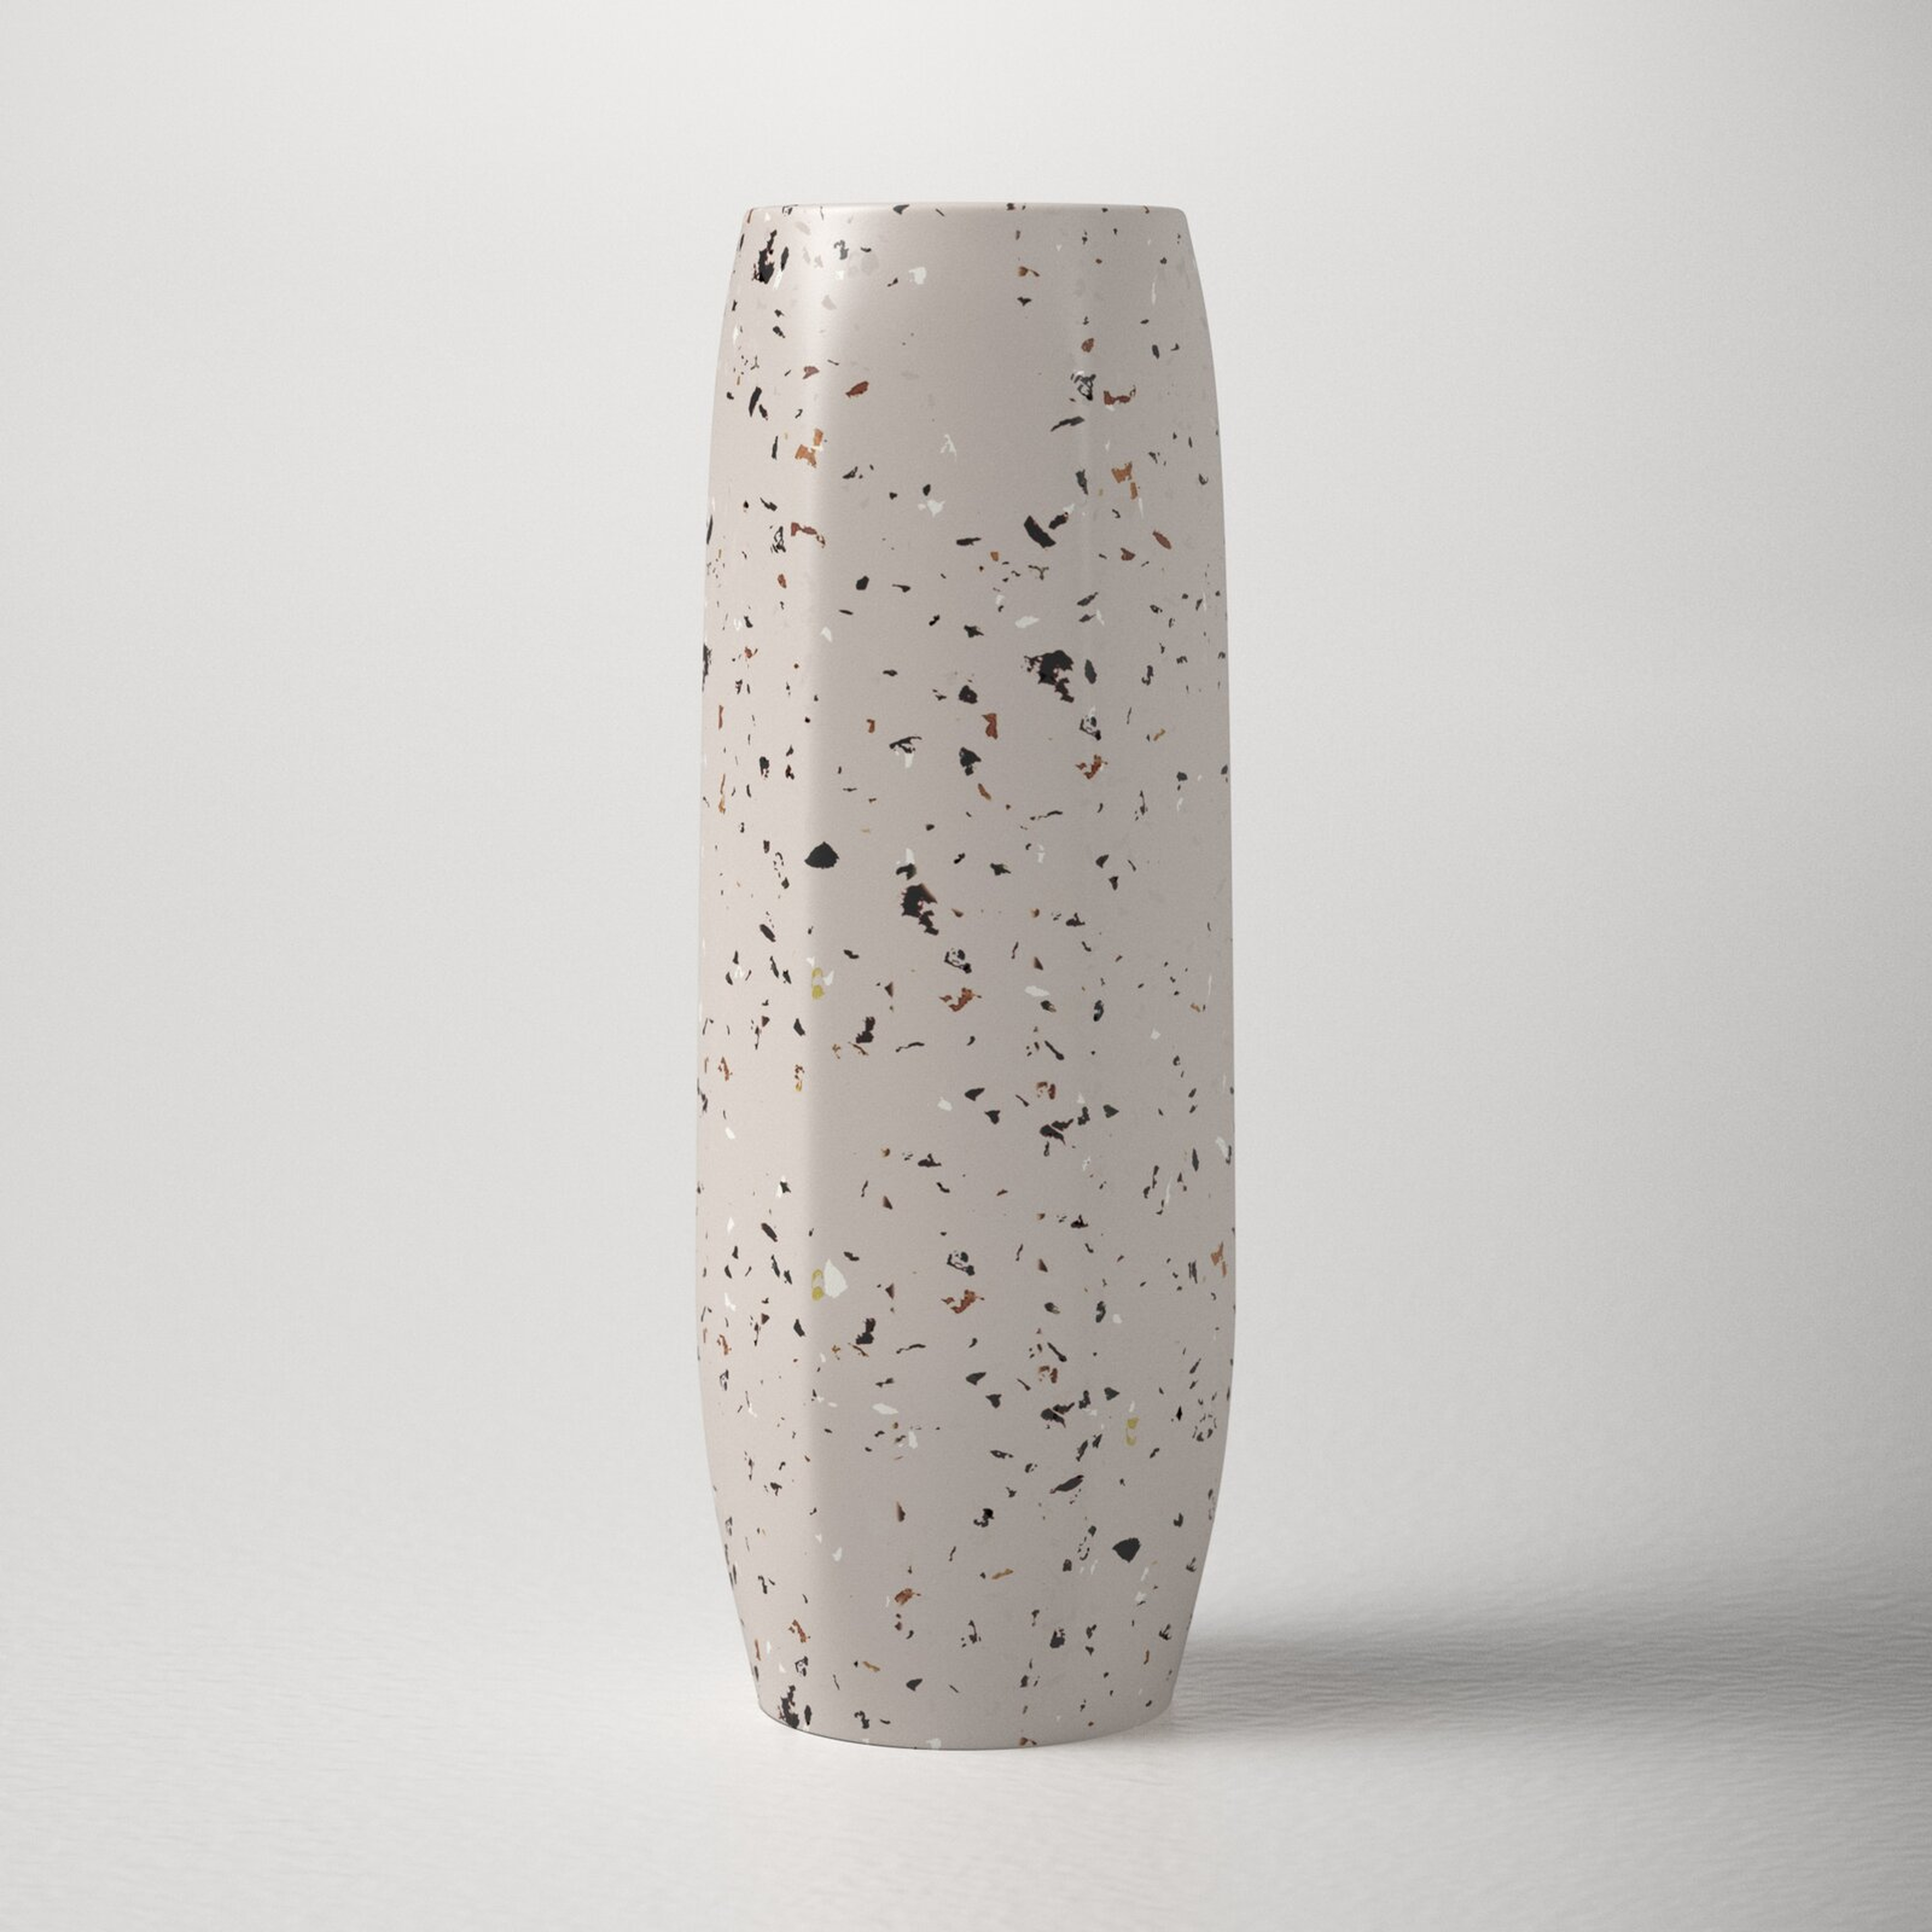 Bay White Concrete Table Vase - Wayfair